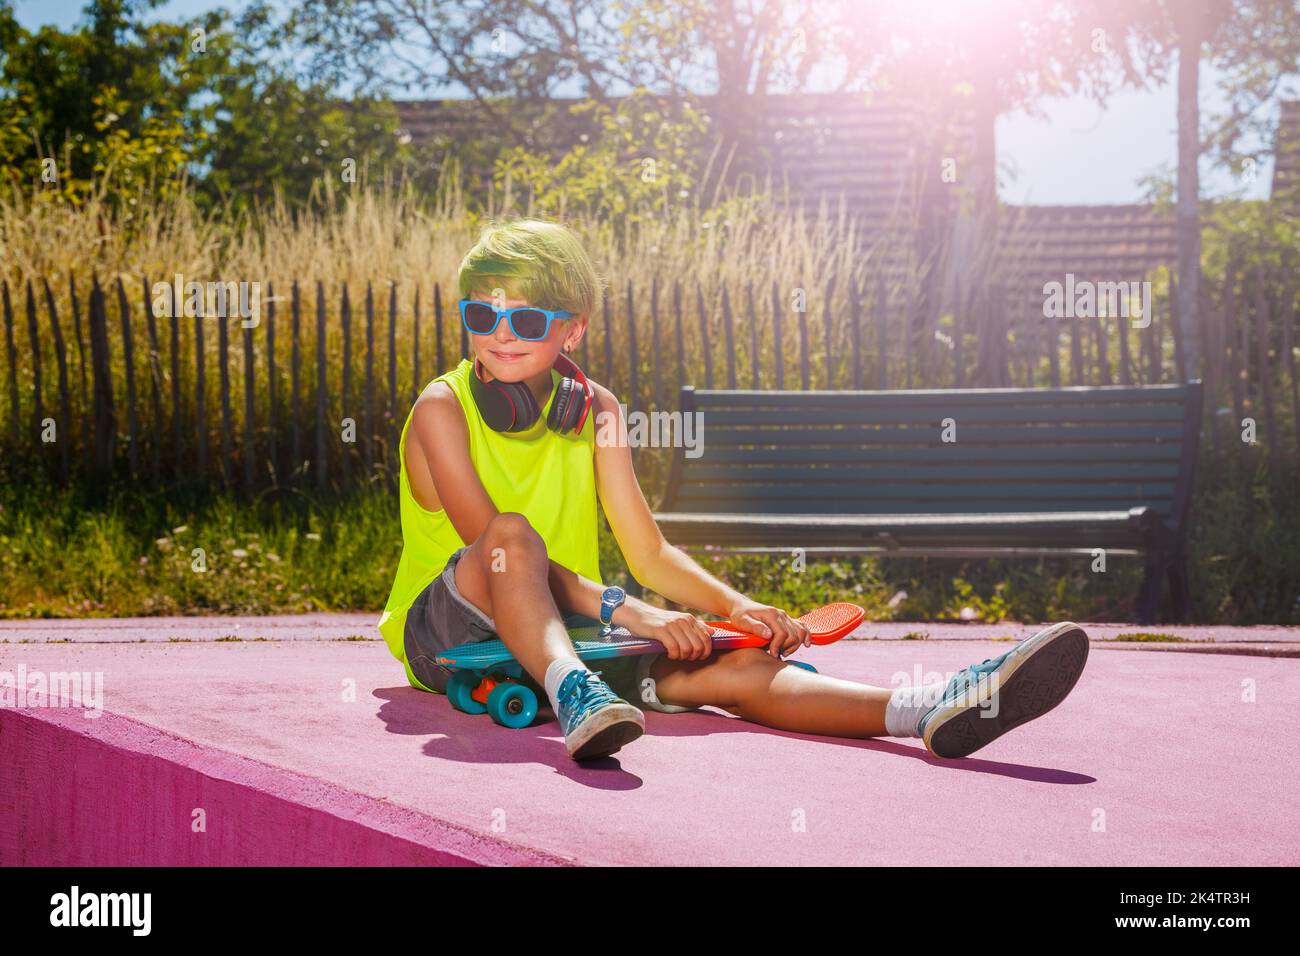 Junge mit grünen Haaren Pose halten Skate auf einer Rampe im Skatepark Stockfoto